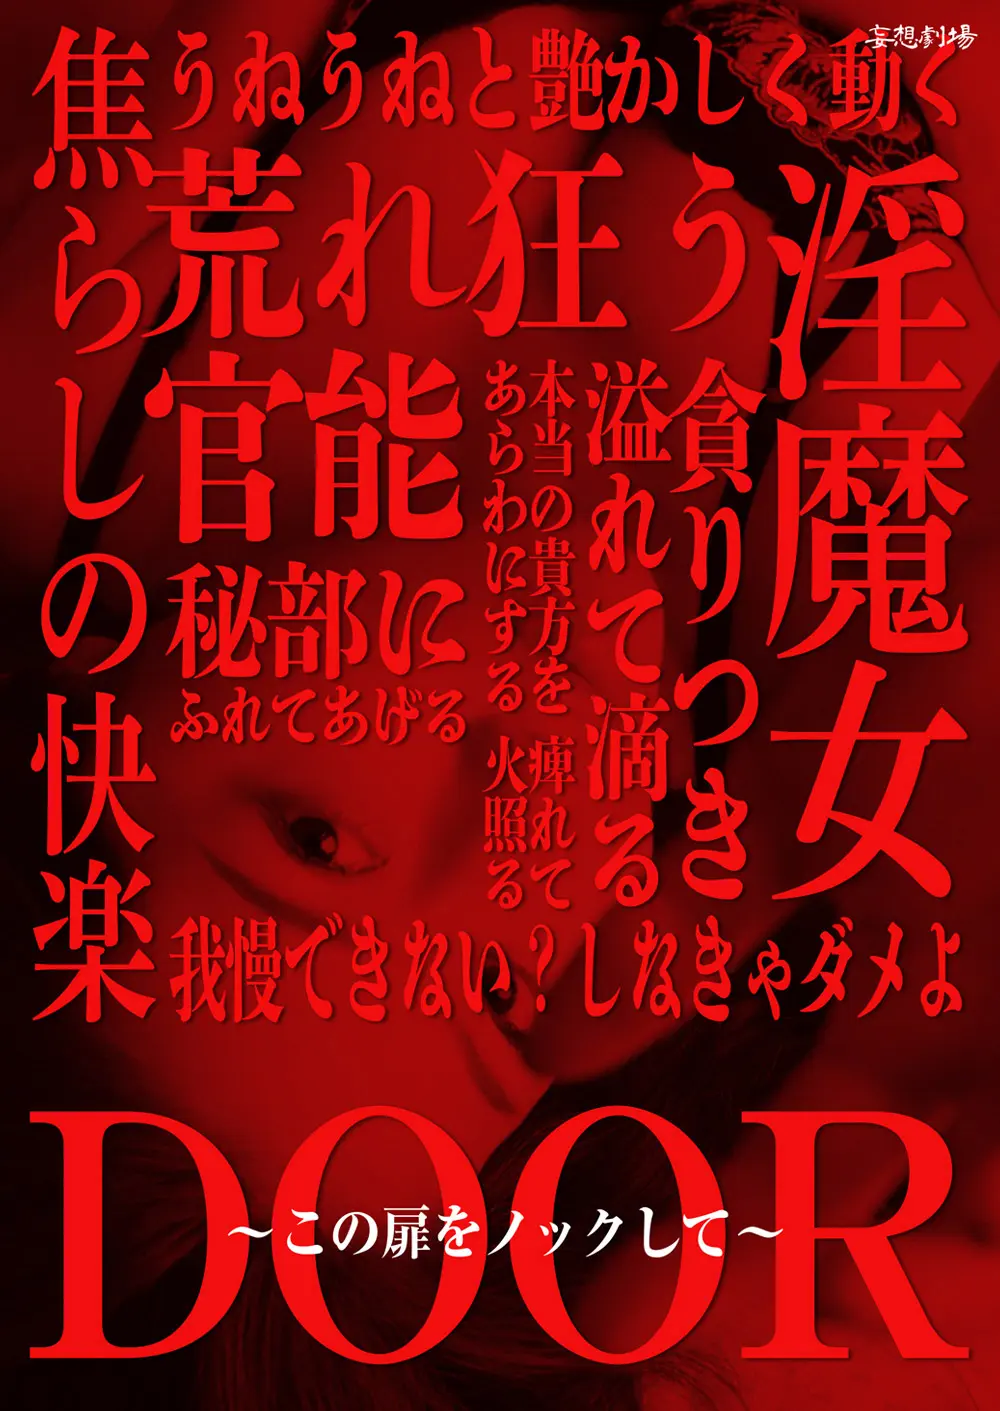 DOORR[X